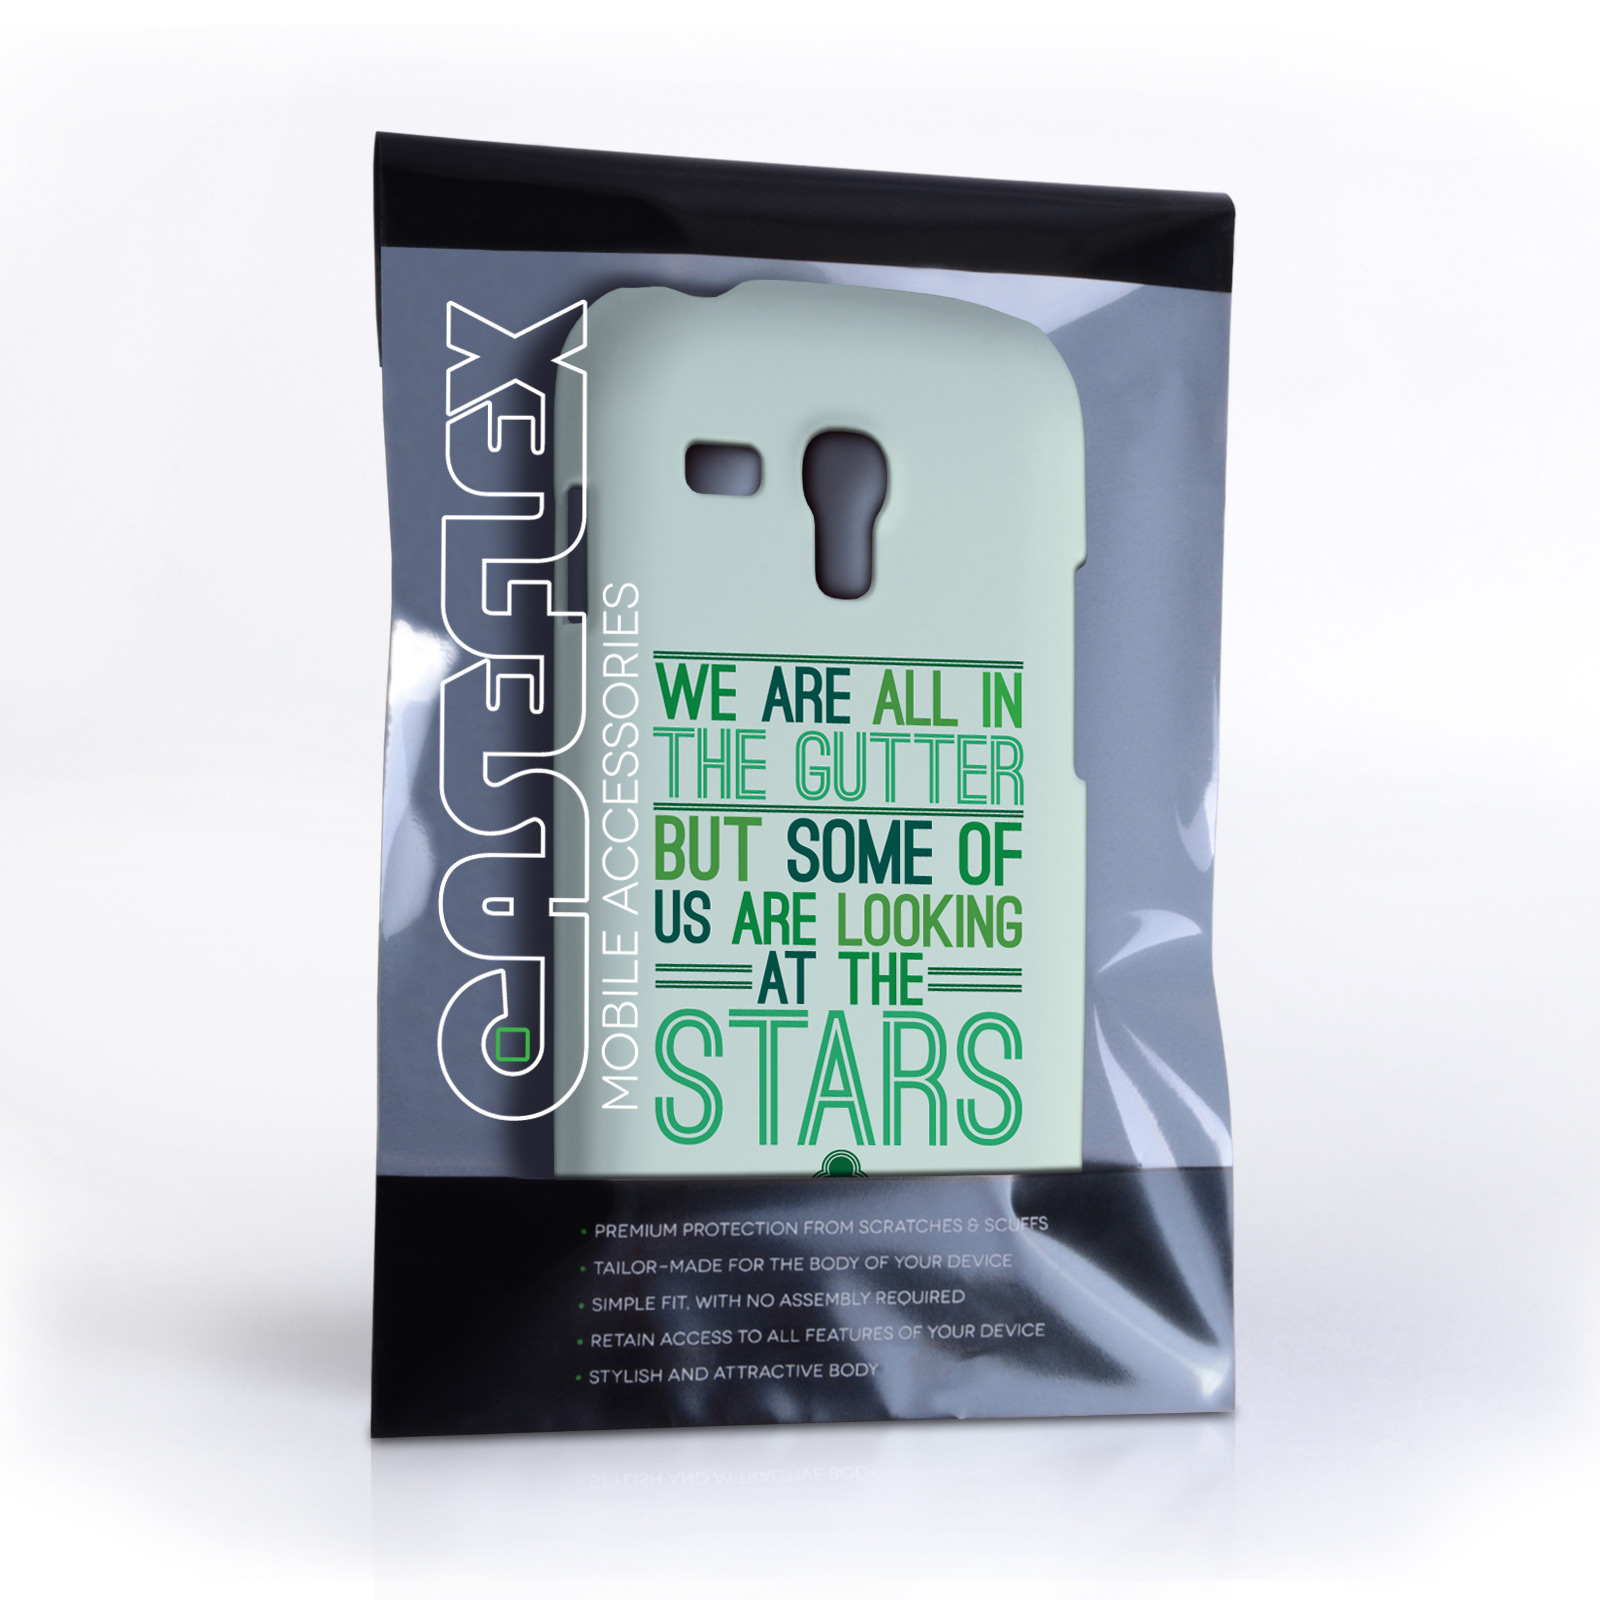 Caseflex Samsung Galaxy S3 Mini Wilde Stars Quote Hard Case – White and Green